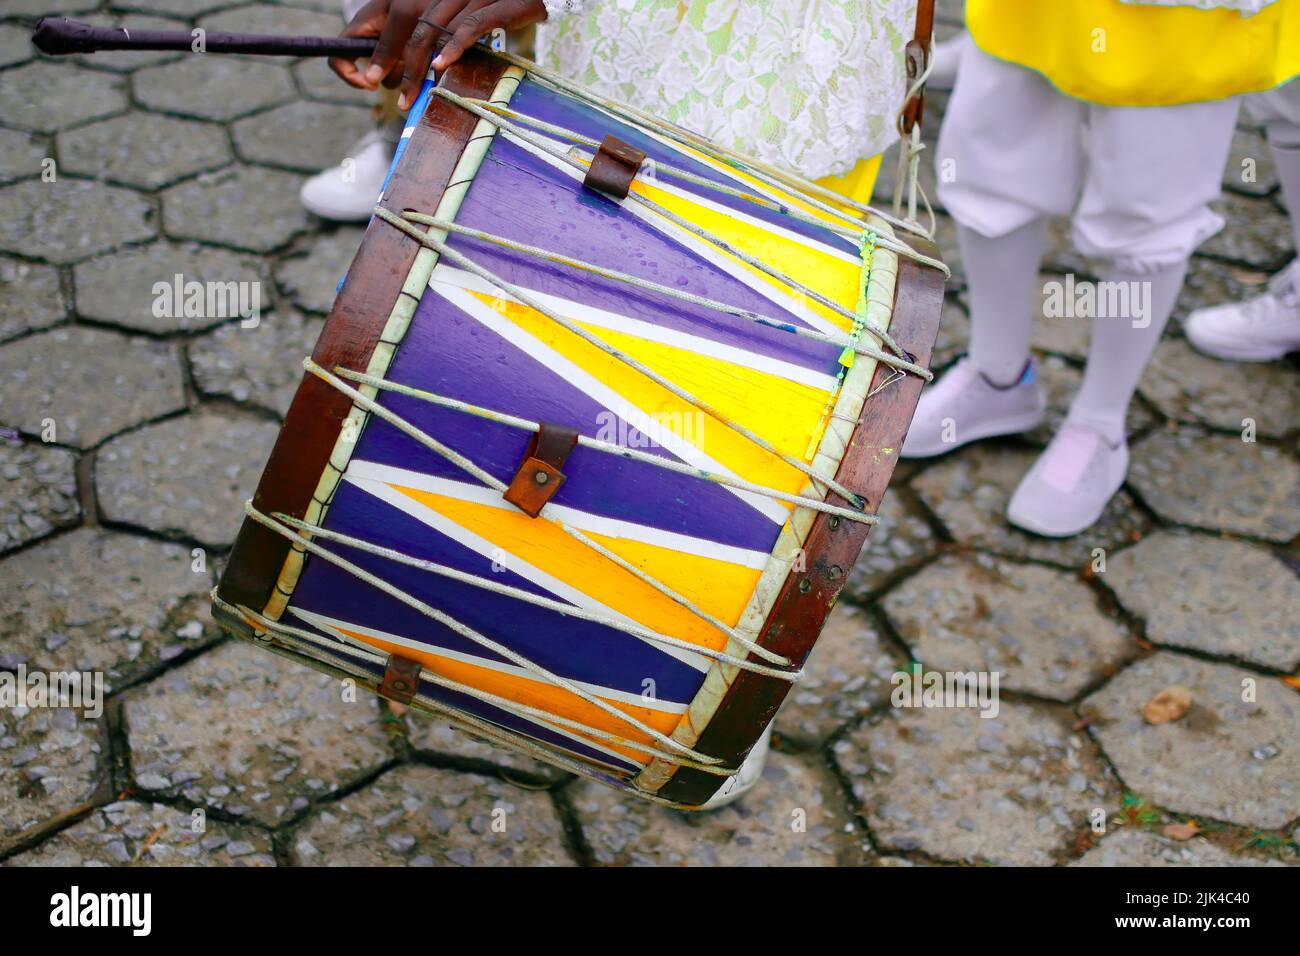 detalle de los instrumentos percusivos característicos del festival del rosario Foto de stock